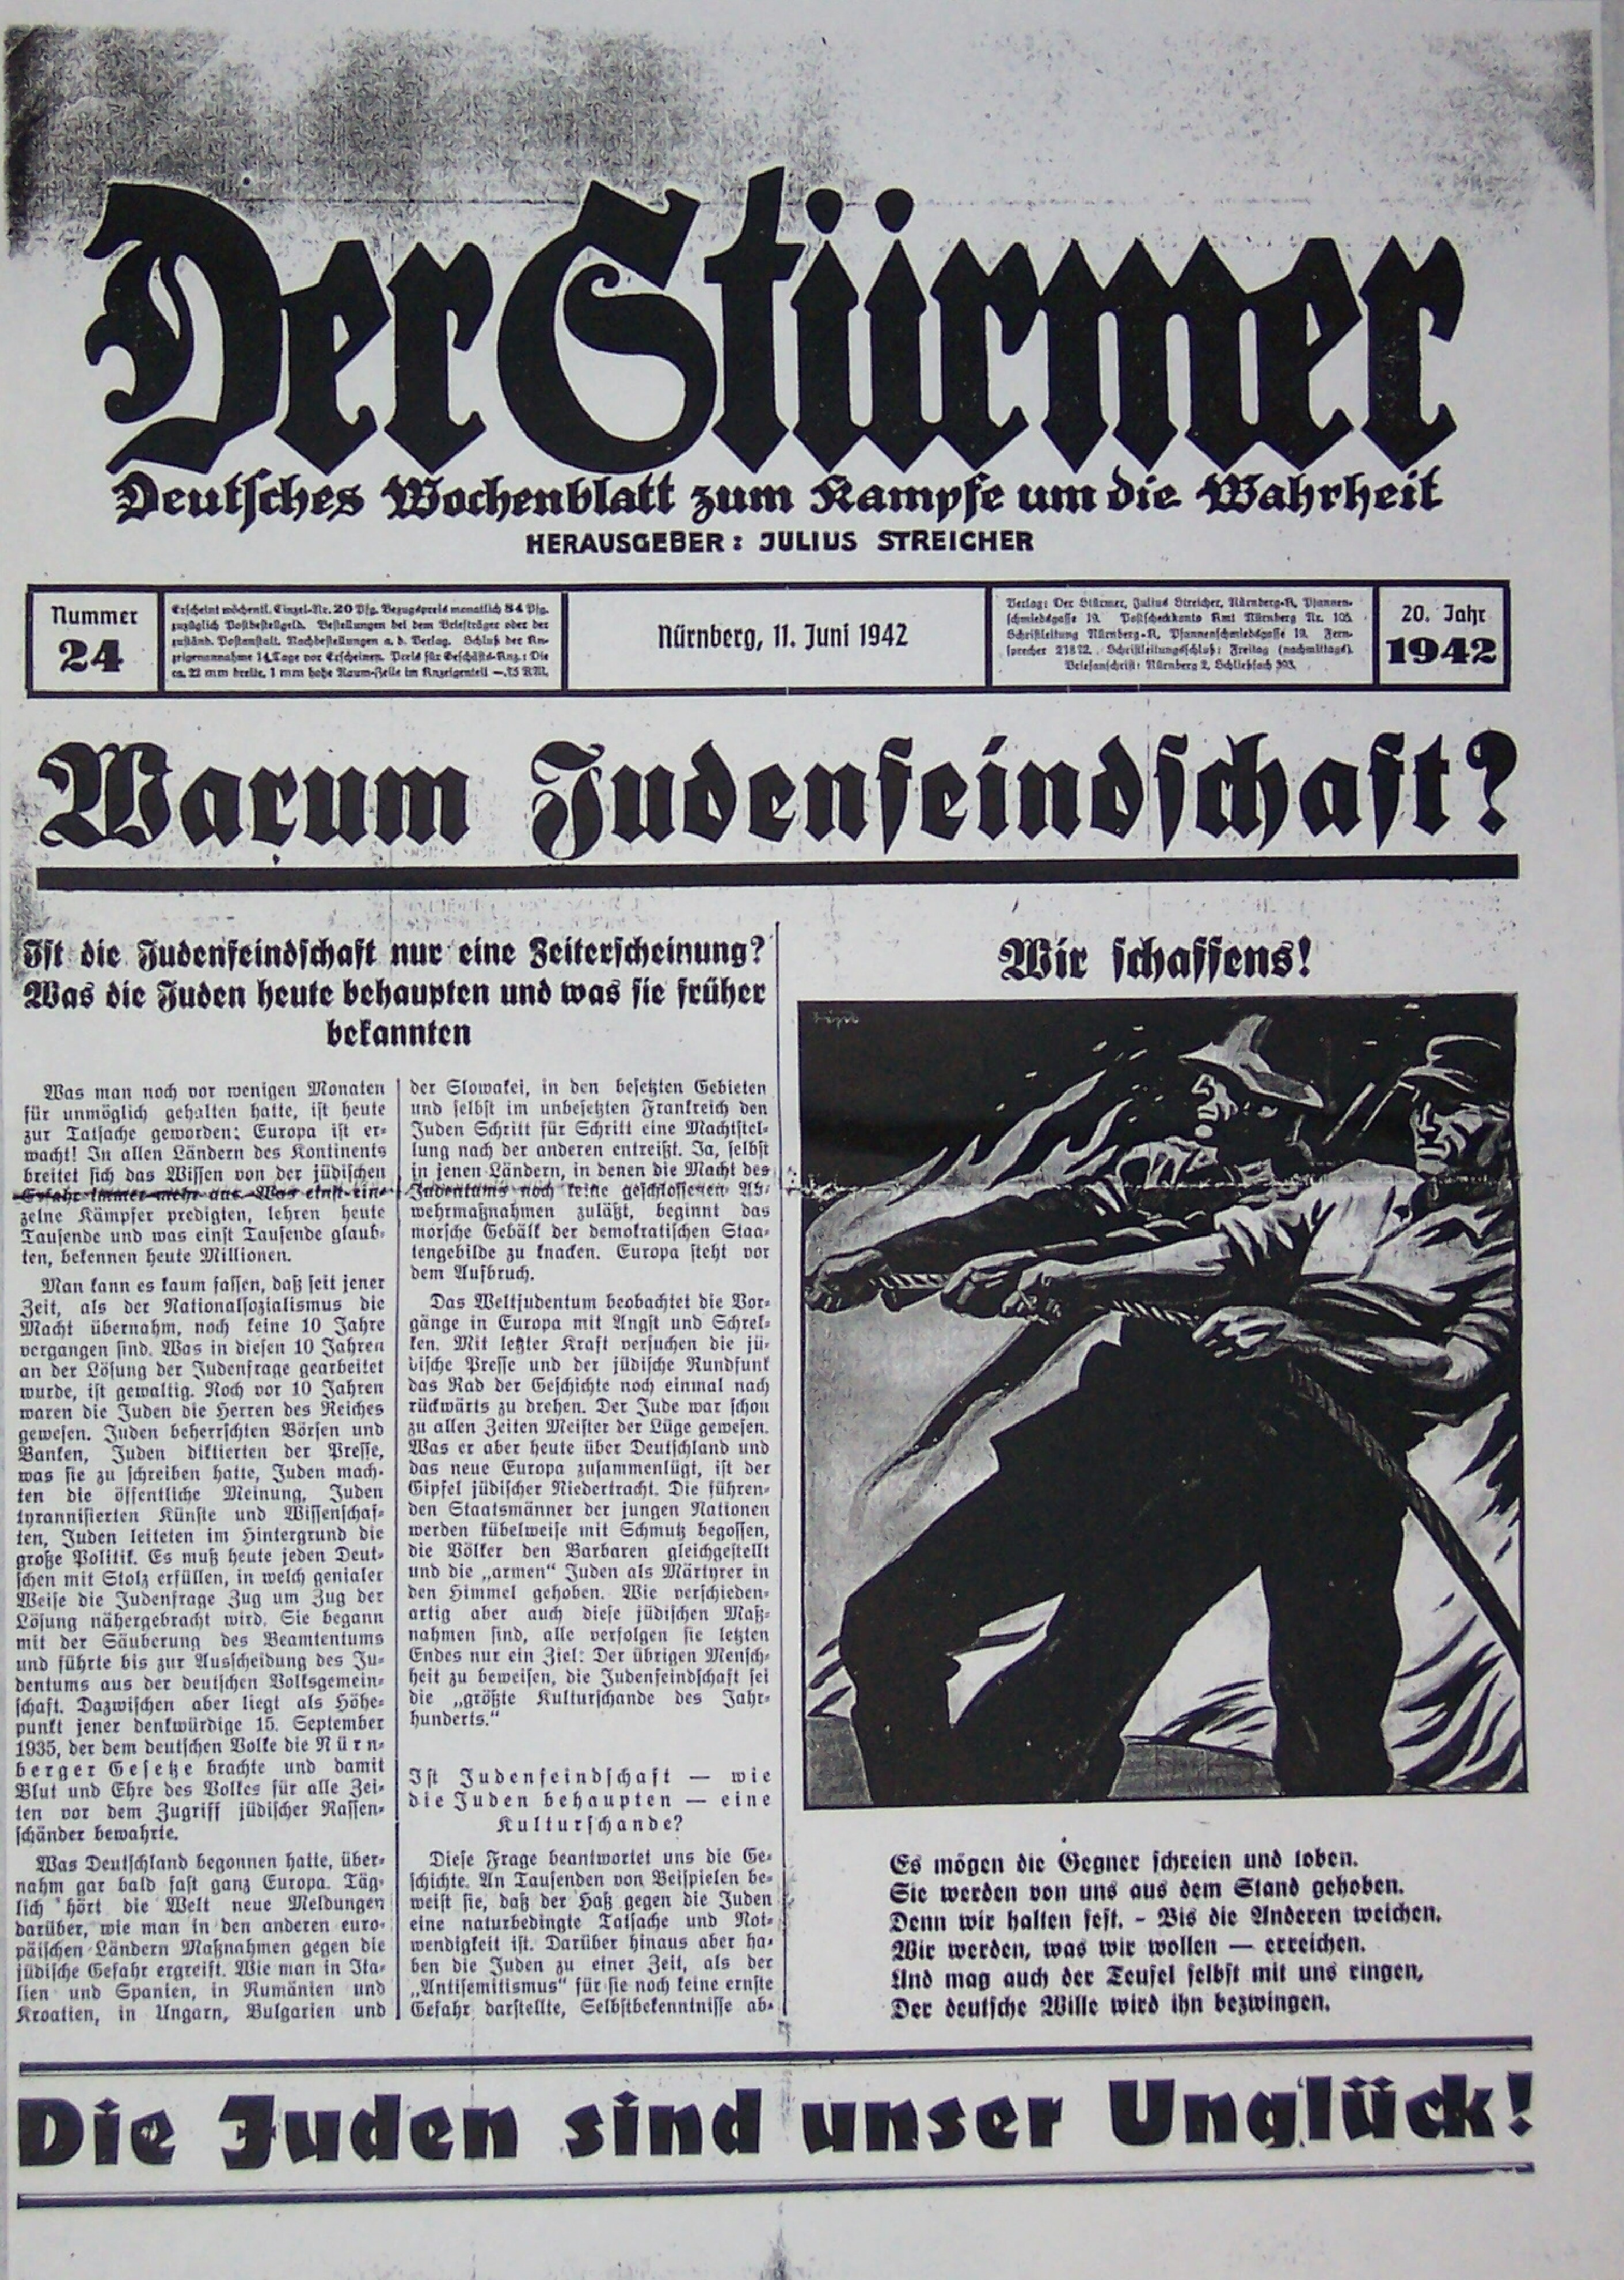 Der Stürmer - 1942 Nr. 24 - Warum Judenfeindschaft